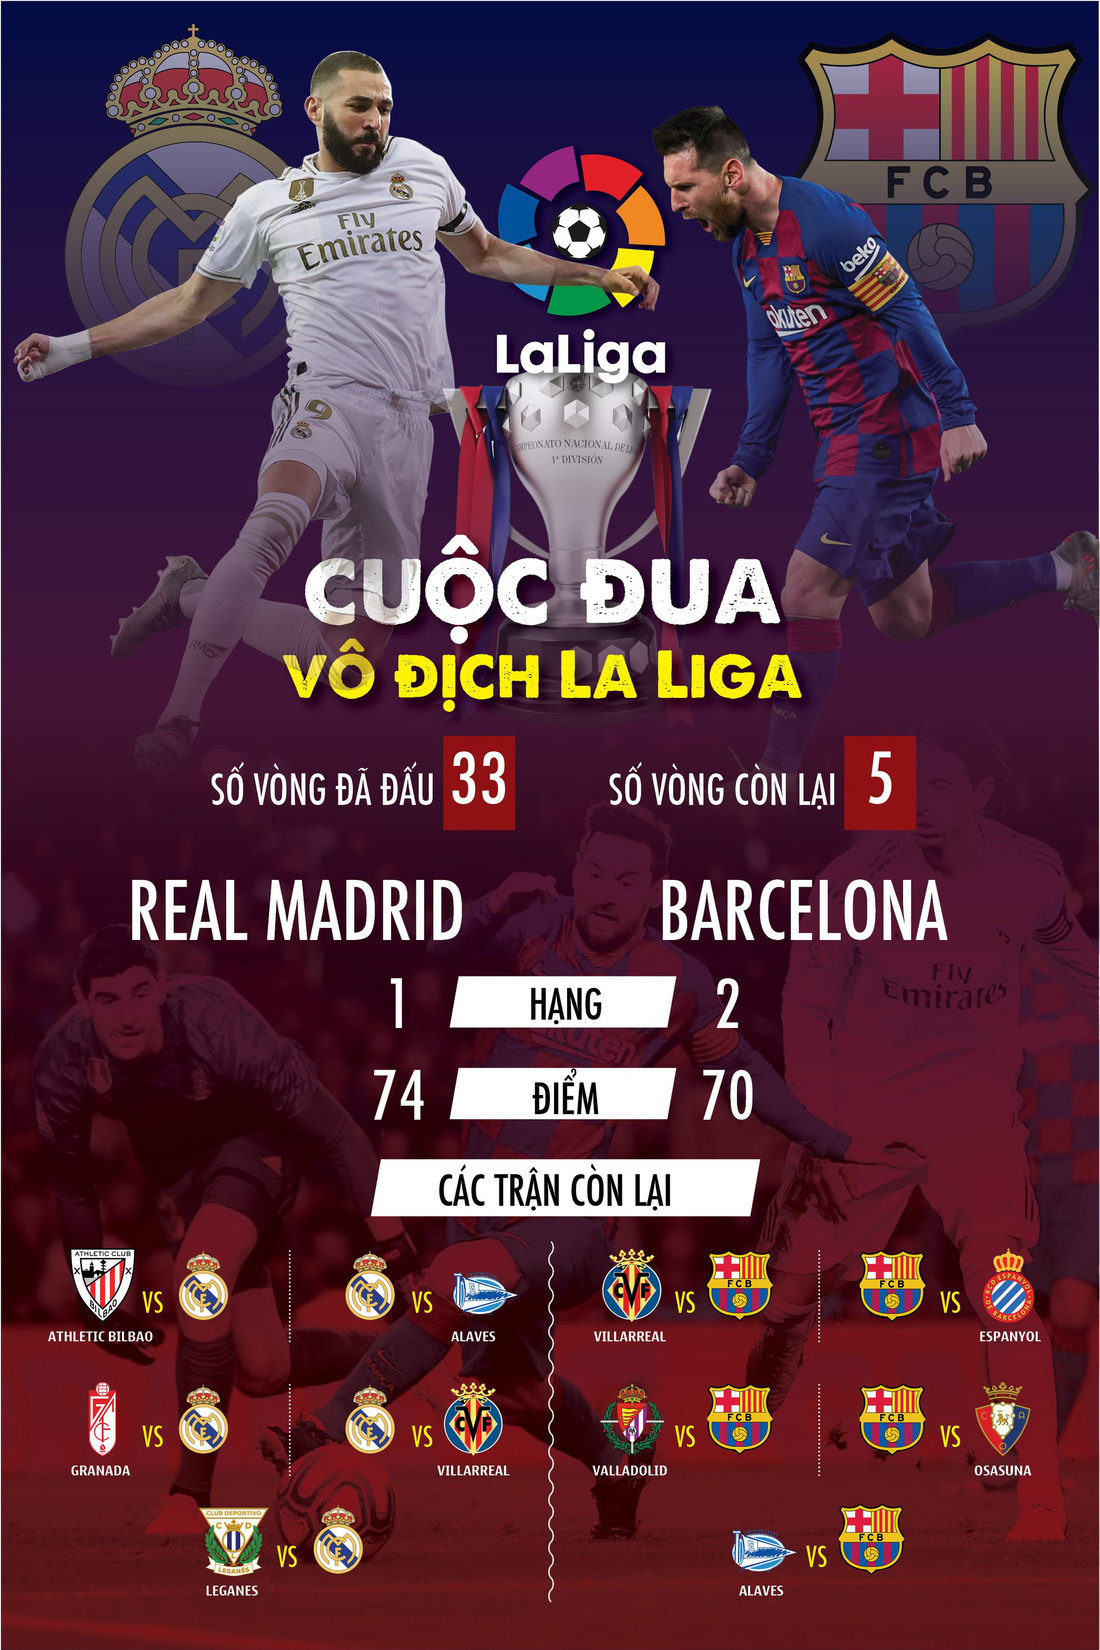 Real Madrid và Barcelona: Ai lợi thế hơn trong cuộc đua vô địch La Liga? - Ảnh 1.